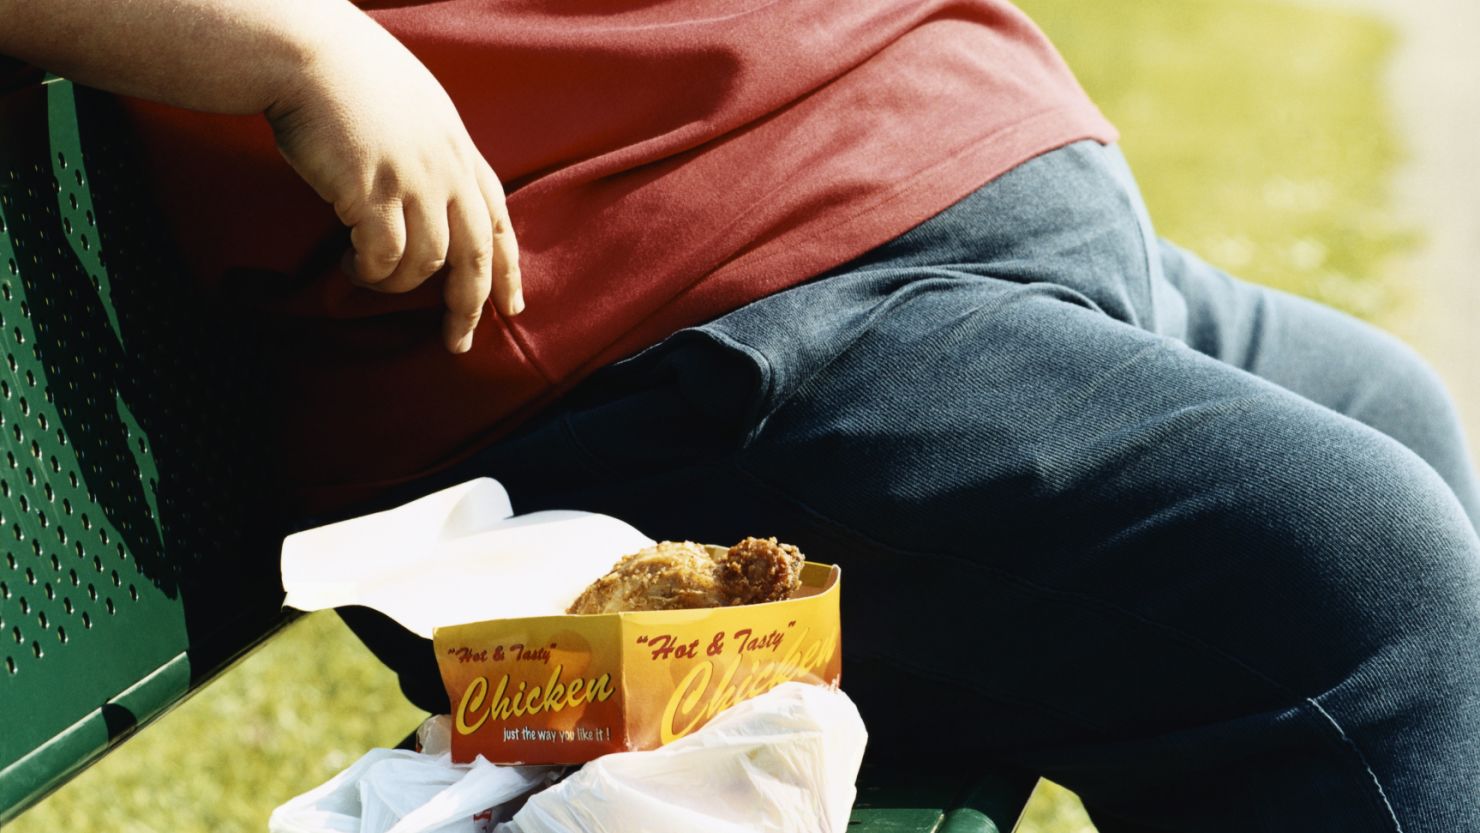 Does Tasty Food Make Us Overeat? – Dr. David Ludwig